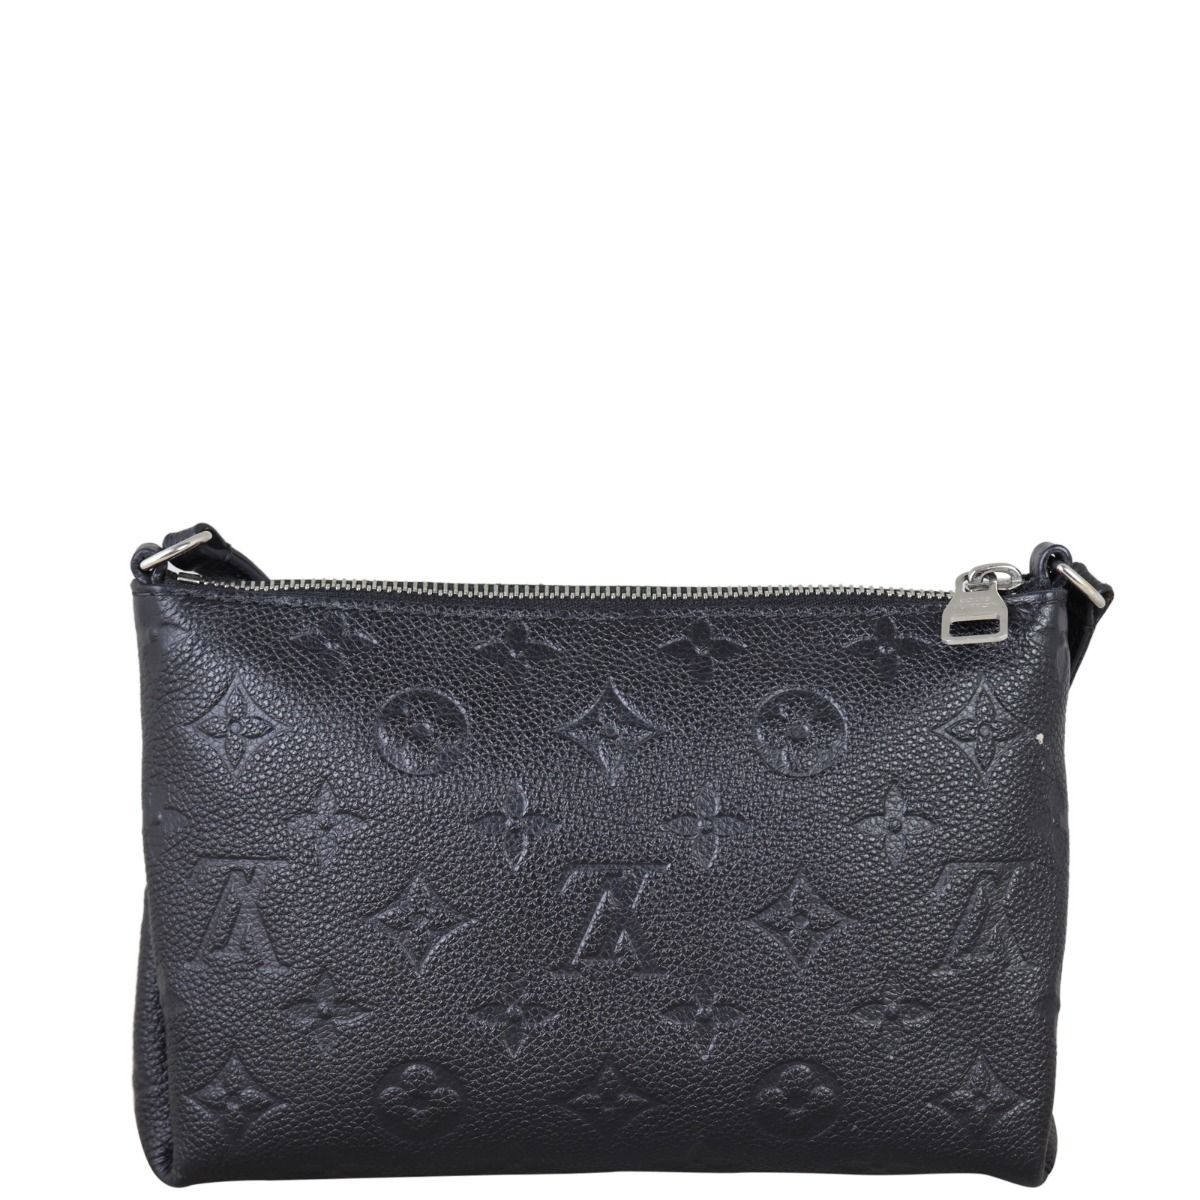 Louis Vuitton Black Leather Adjustable Shoulder Bag Strap Louis